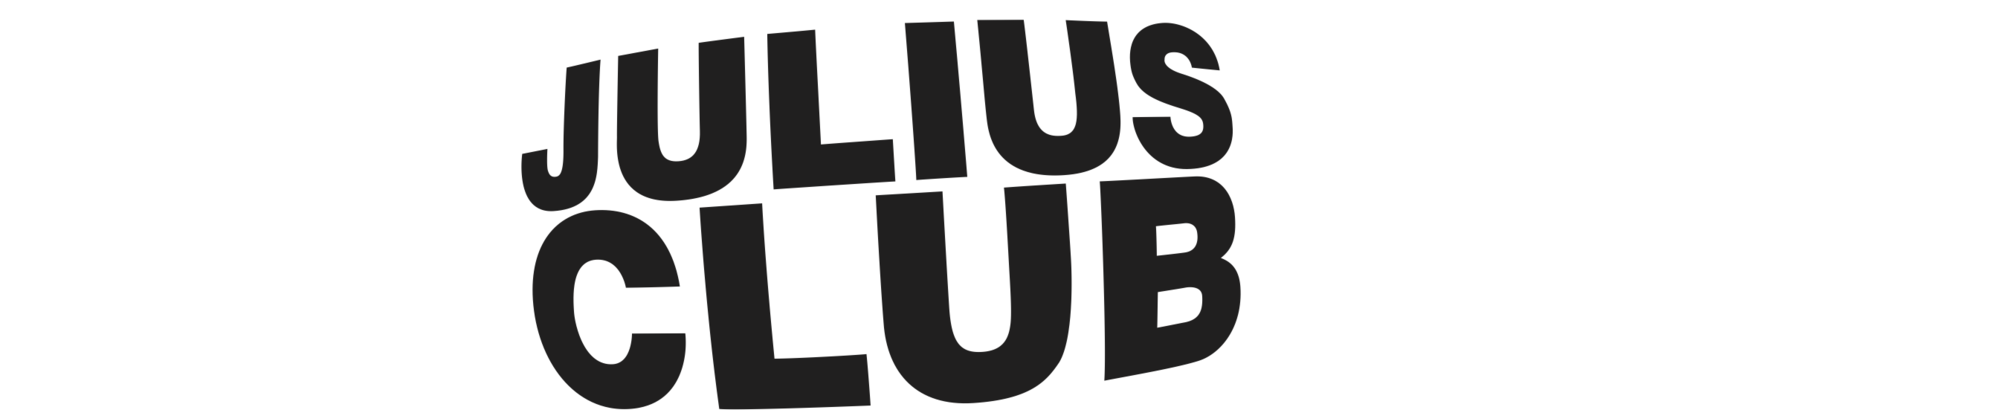 Julius-Club